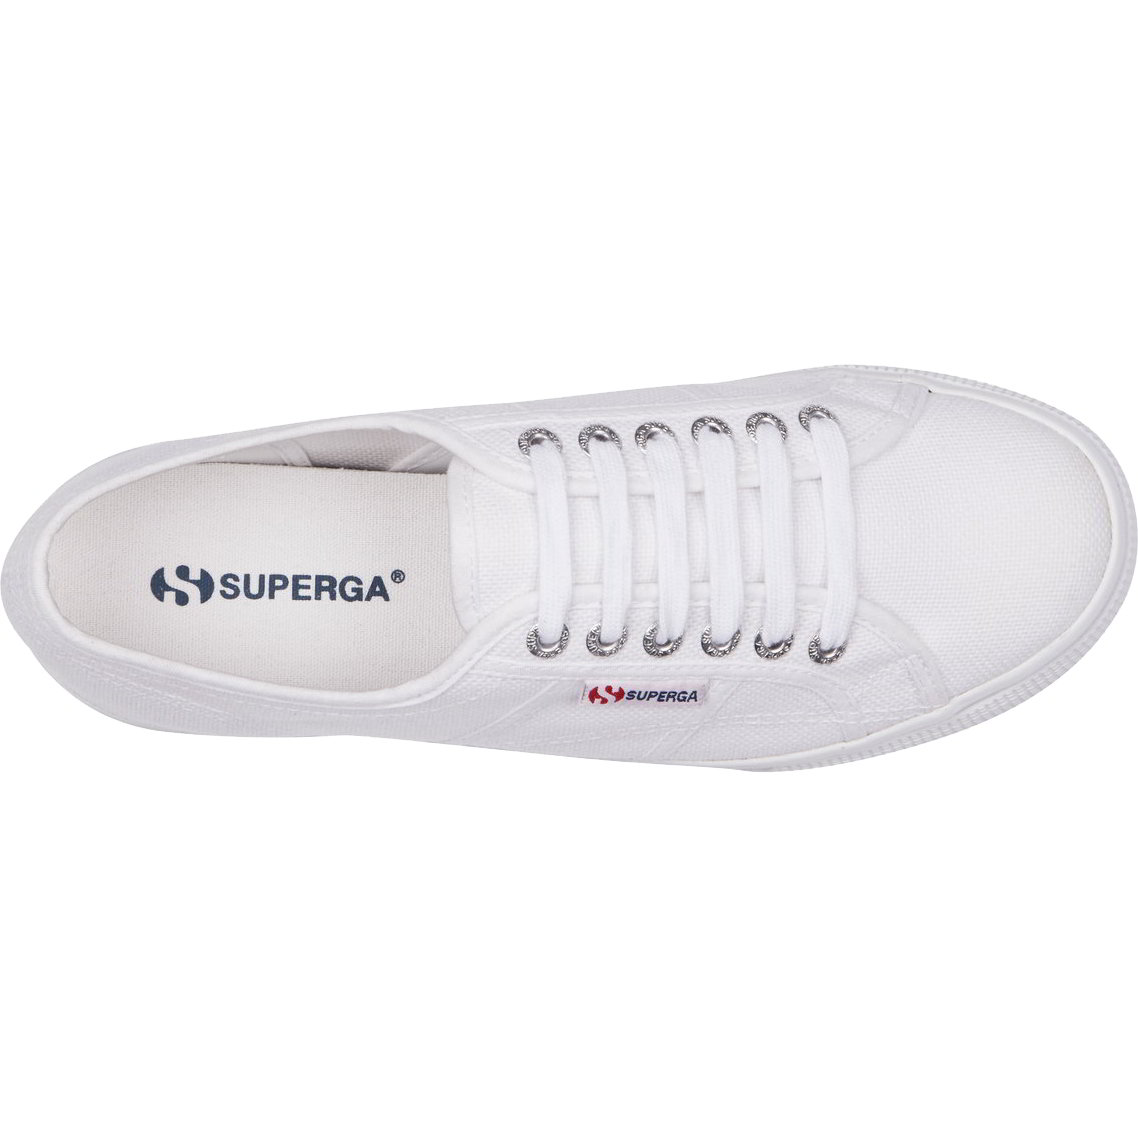 Superga Womens 2790 Linea Chunky Platform Trainers Shoes - UK 8